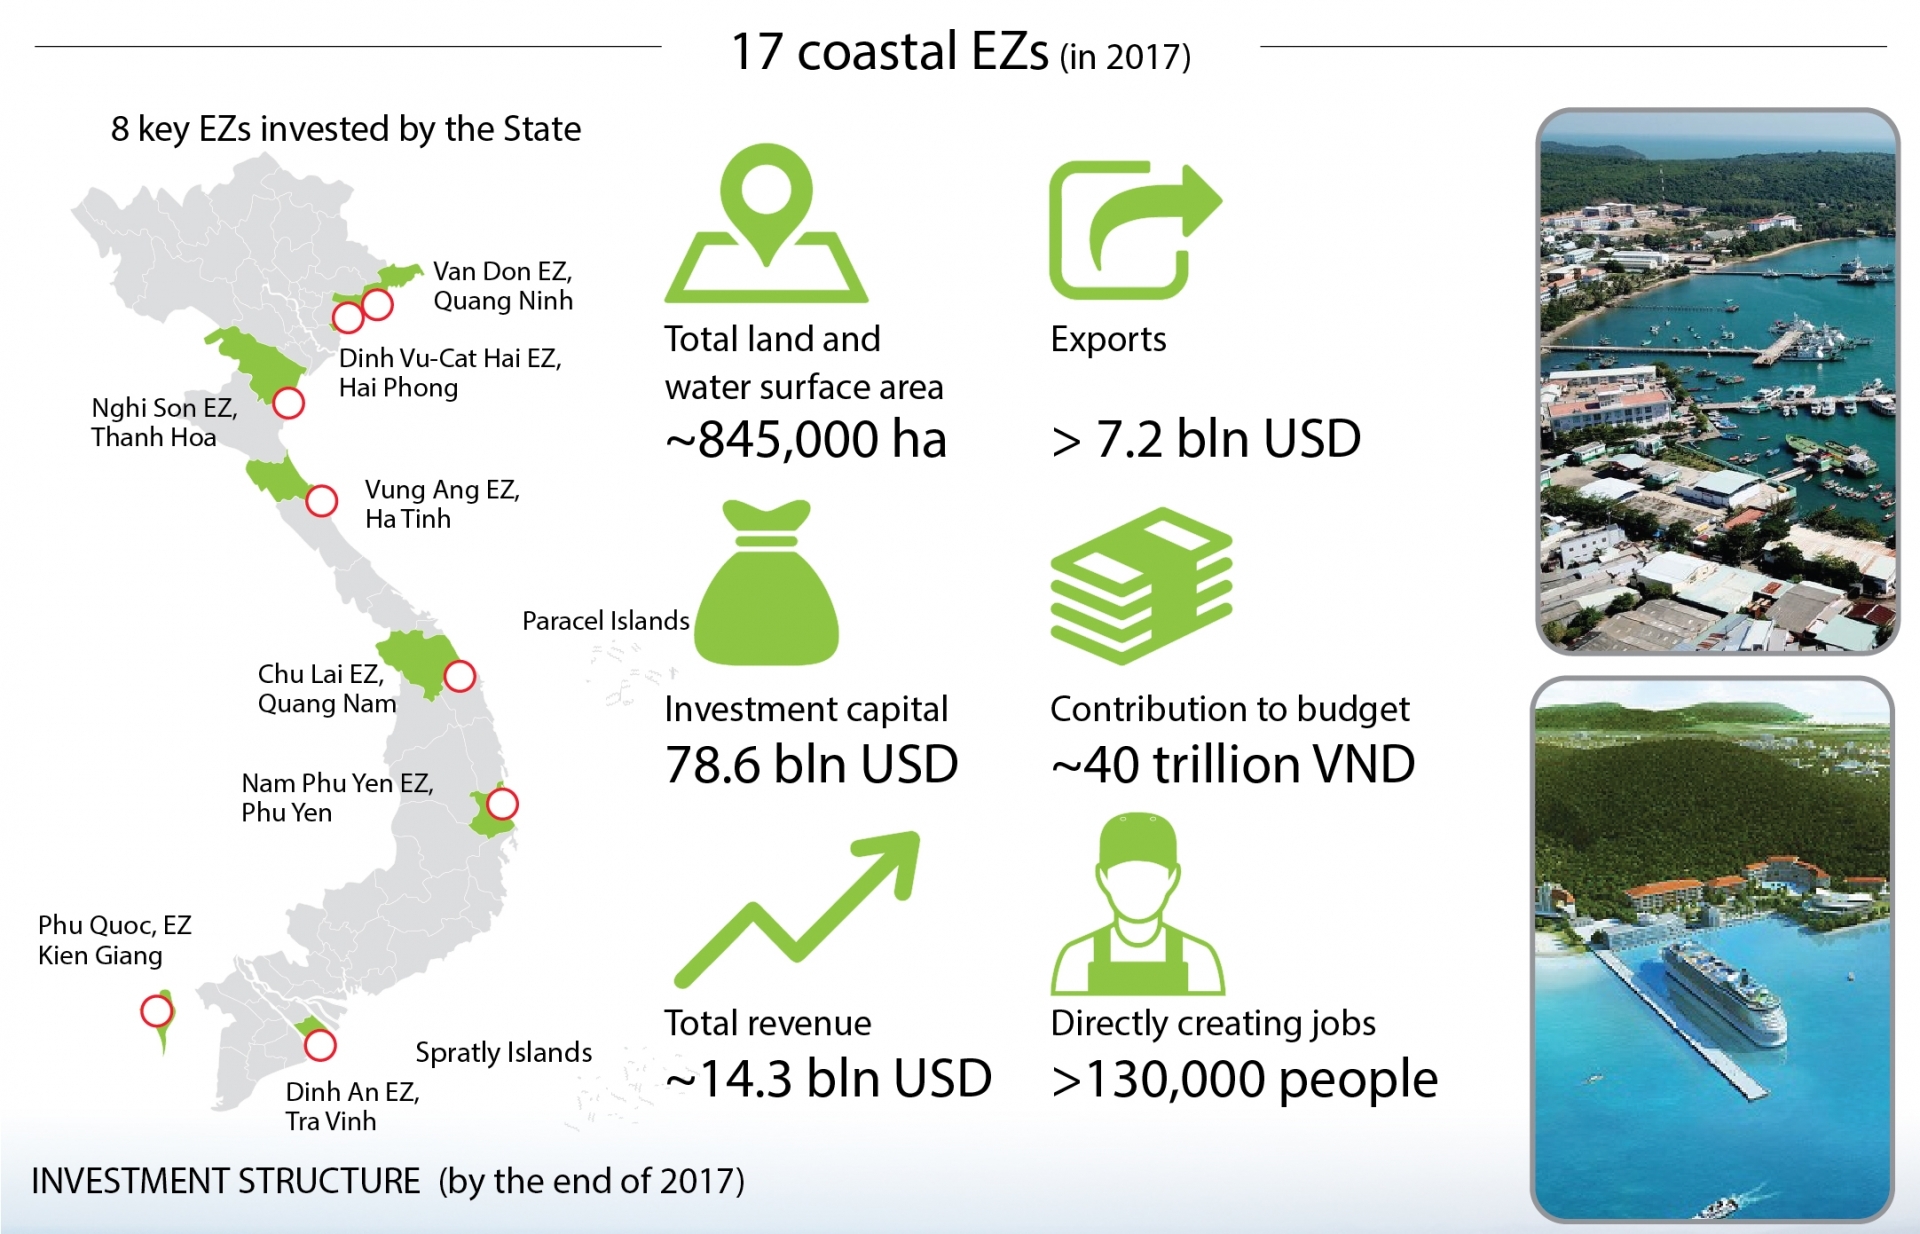 Coastal economic zones greatly contribute to economic growth